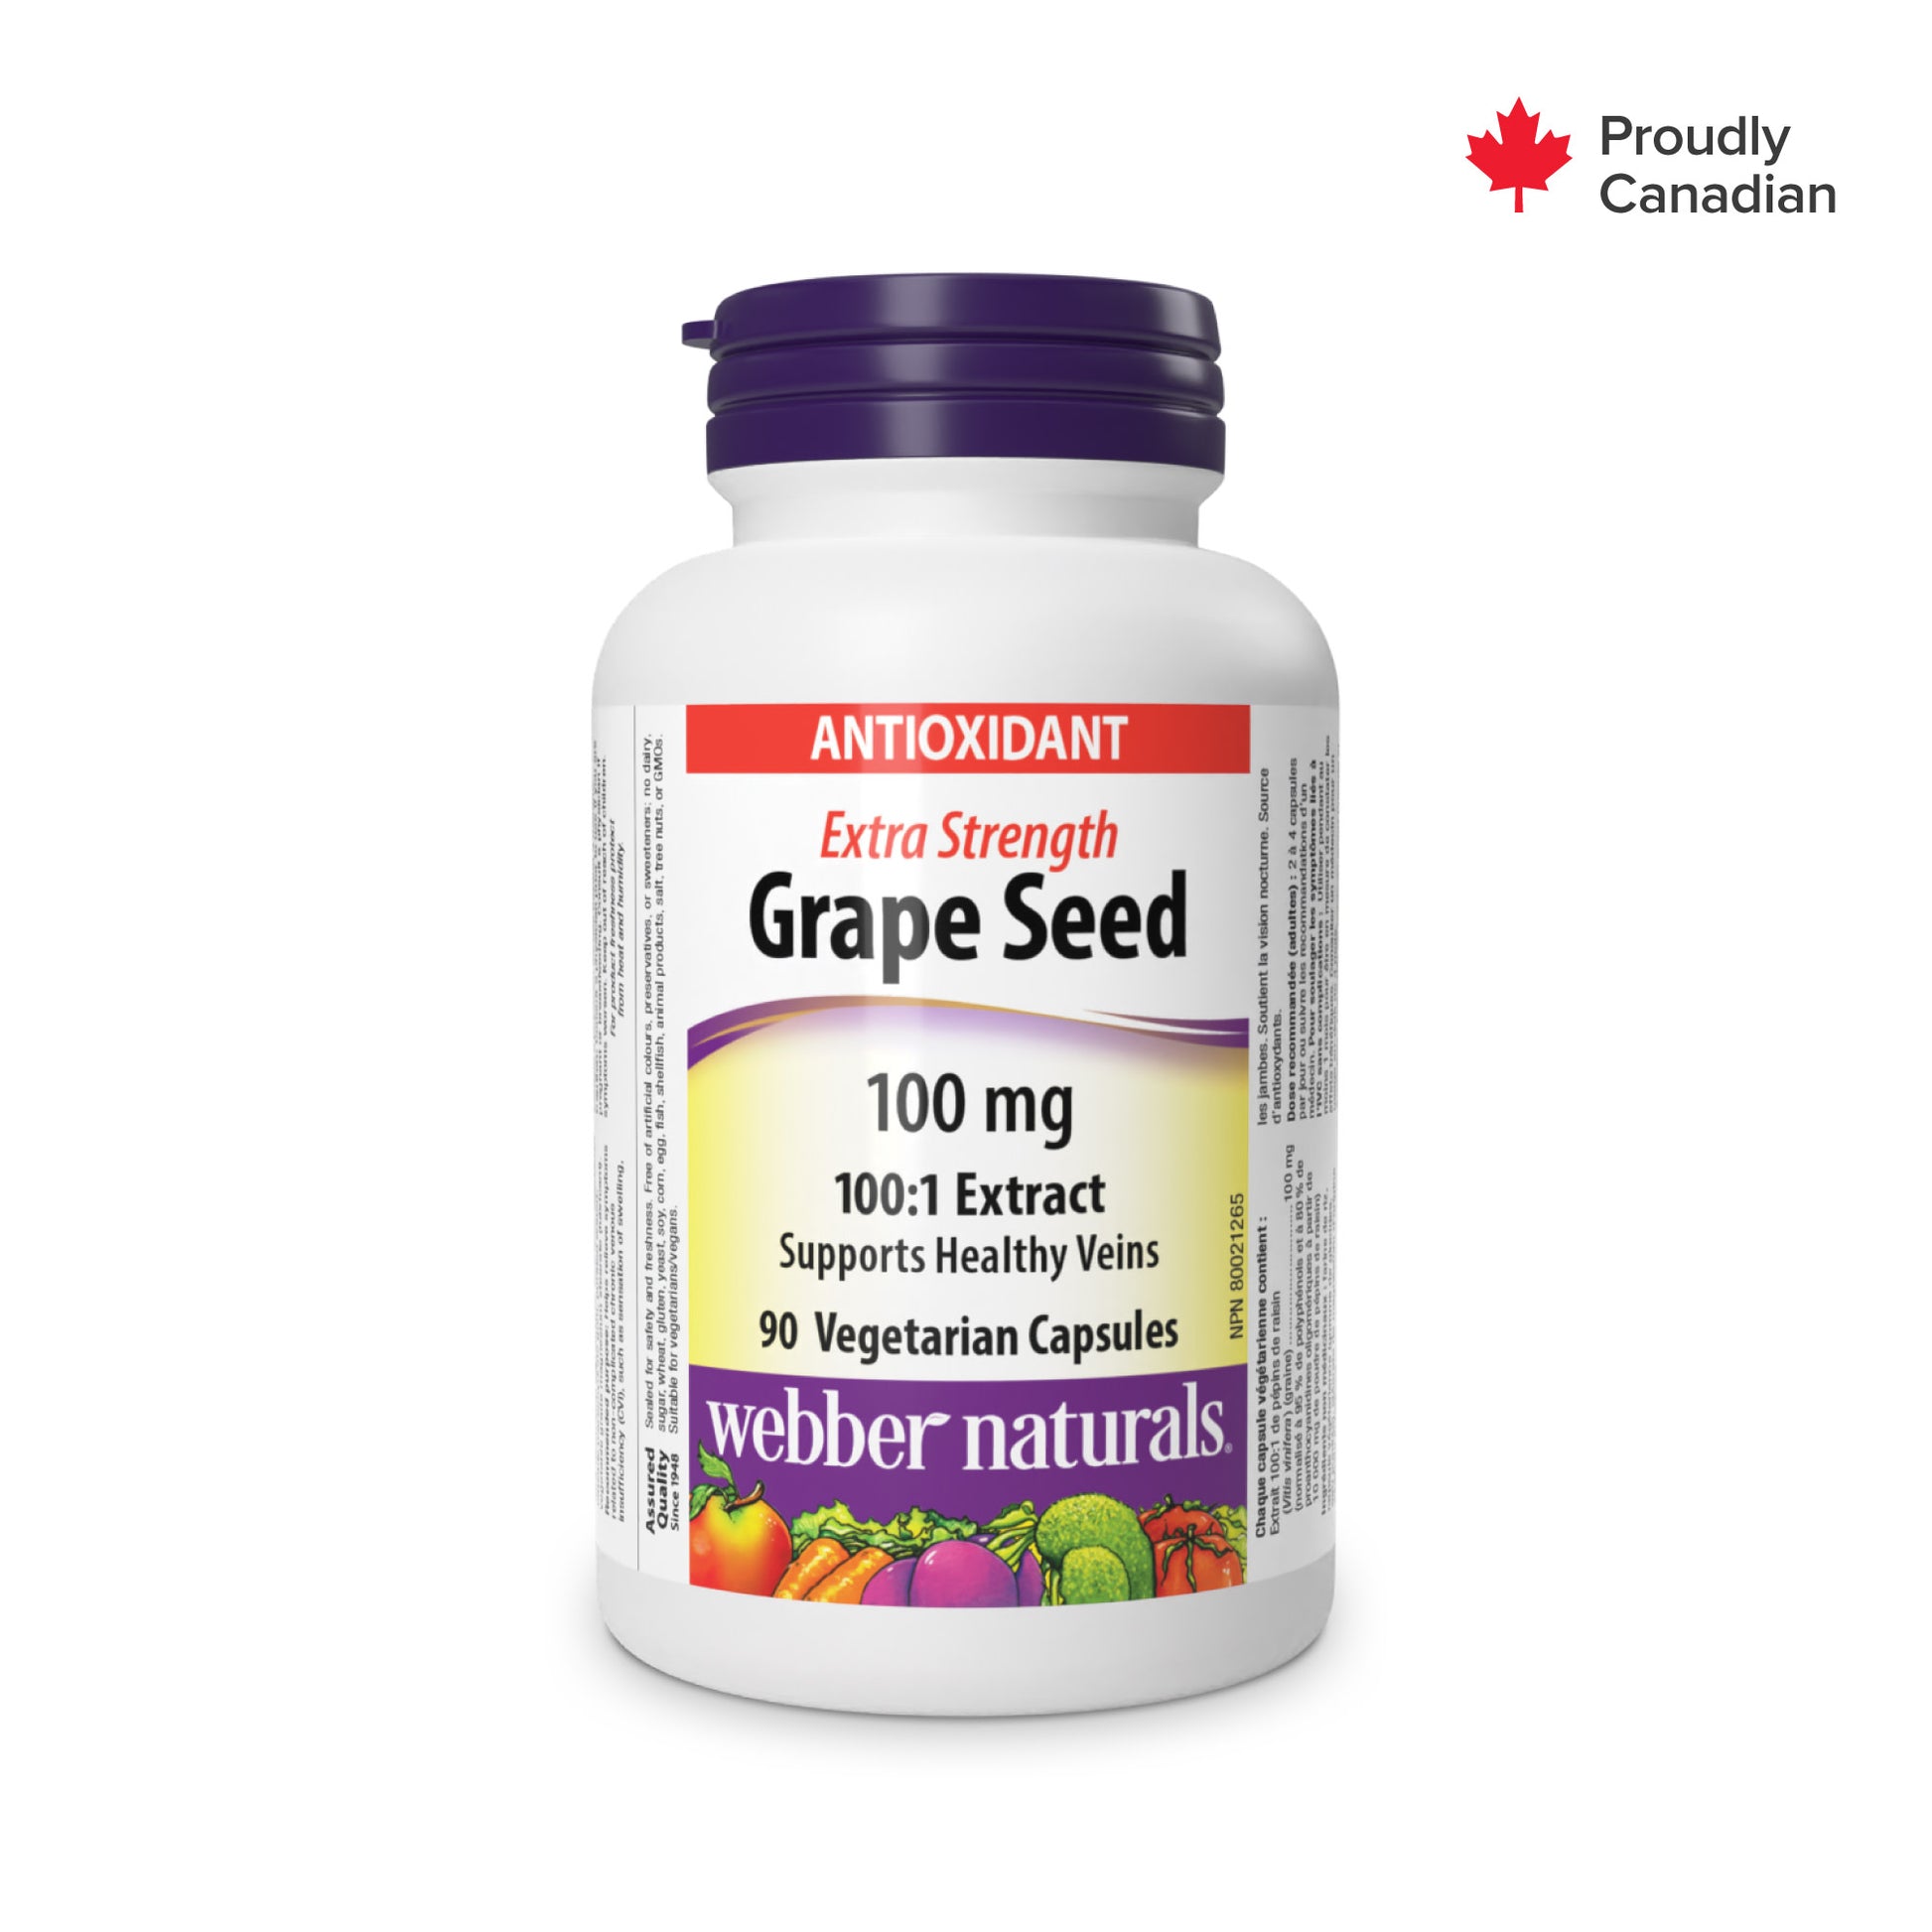 Pépin de raisin extra-fort 100 mg for Webber Naturals|v|hi-res|WN3436